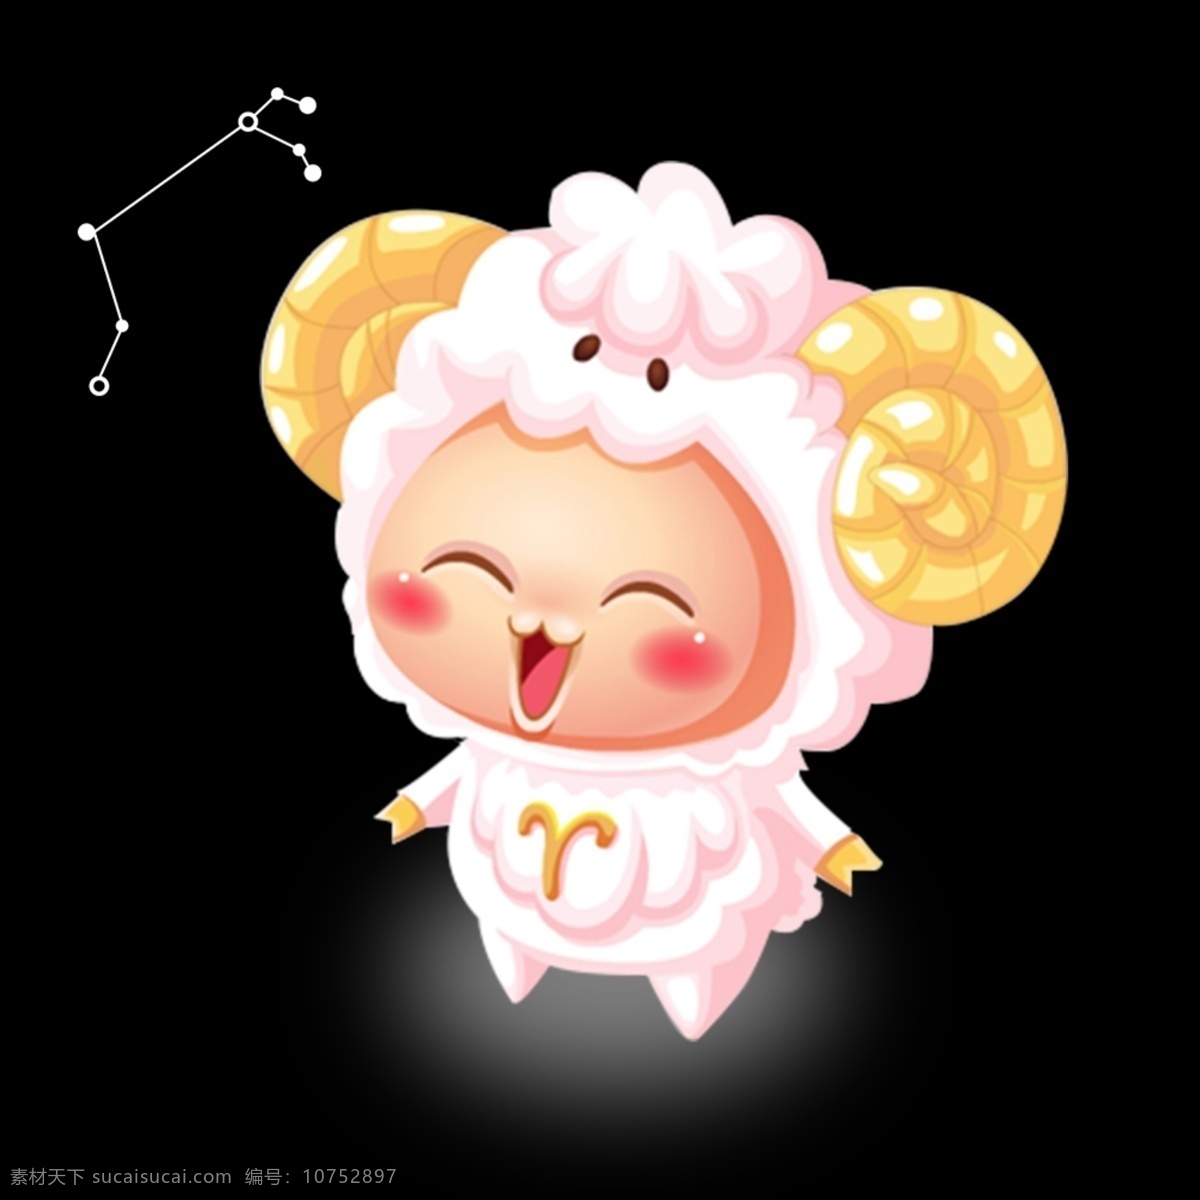 星座 动物 白羊座 十二星座 qq牧场 羊 动物星座 星座精灵 粉色 白羊 可爱 可爱星座 动漫动画